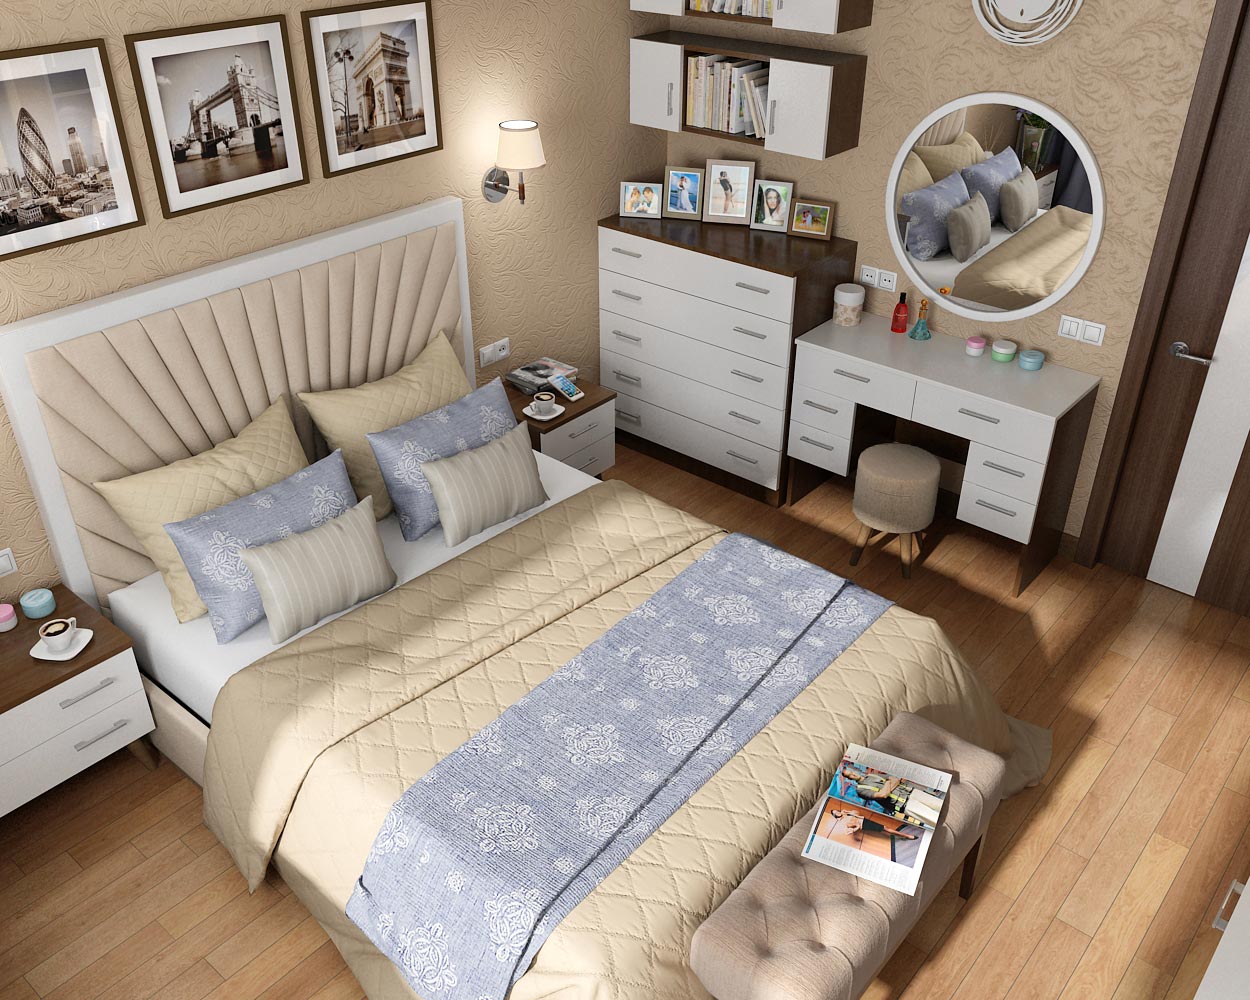 Projet de design d'intérieur pour une chambre dans un appartement à Tchernigov dans 3d max vray 1.5 image